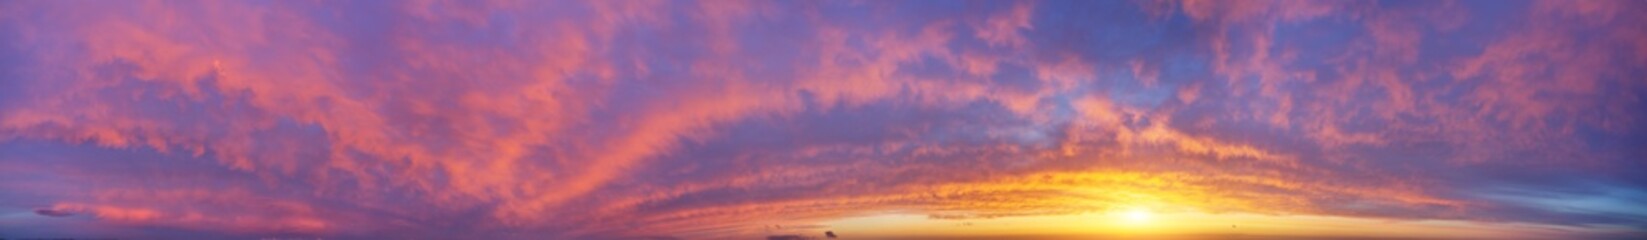 Big hi-resolution sunset panorama.